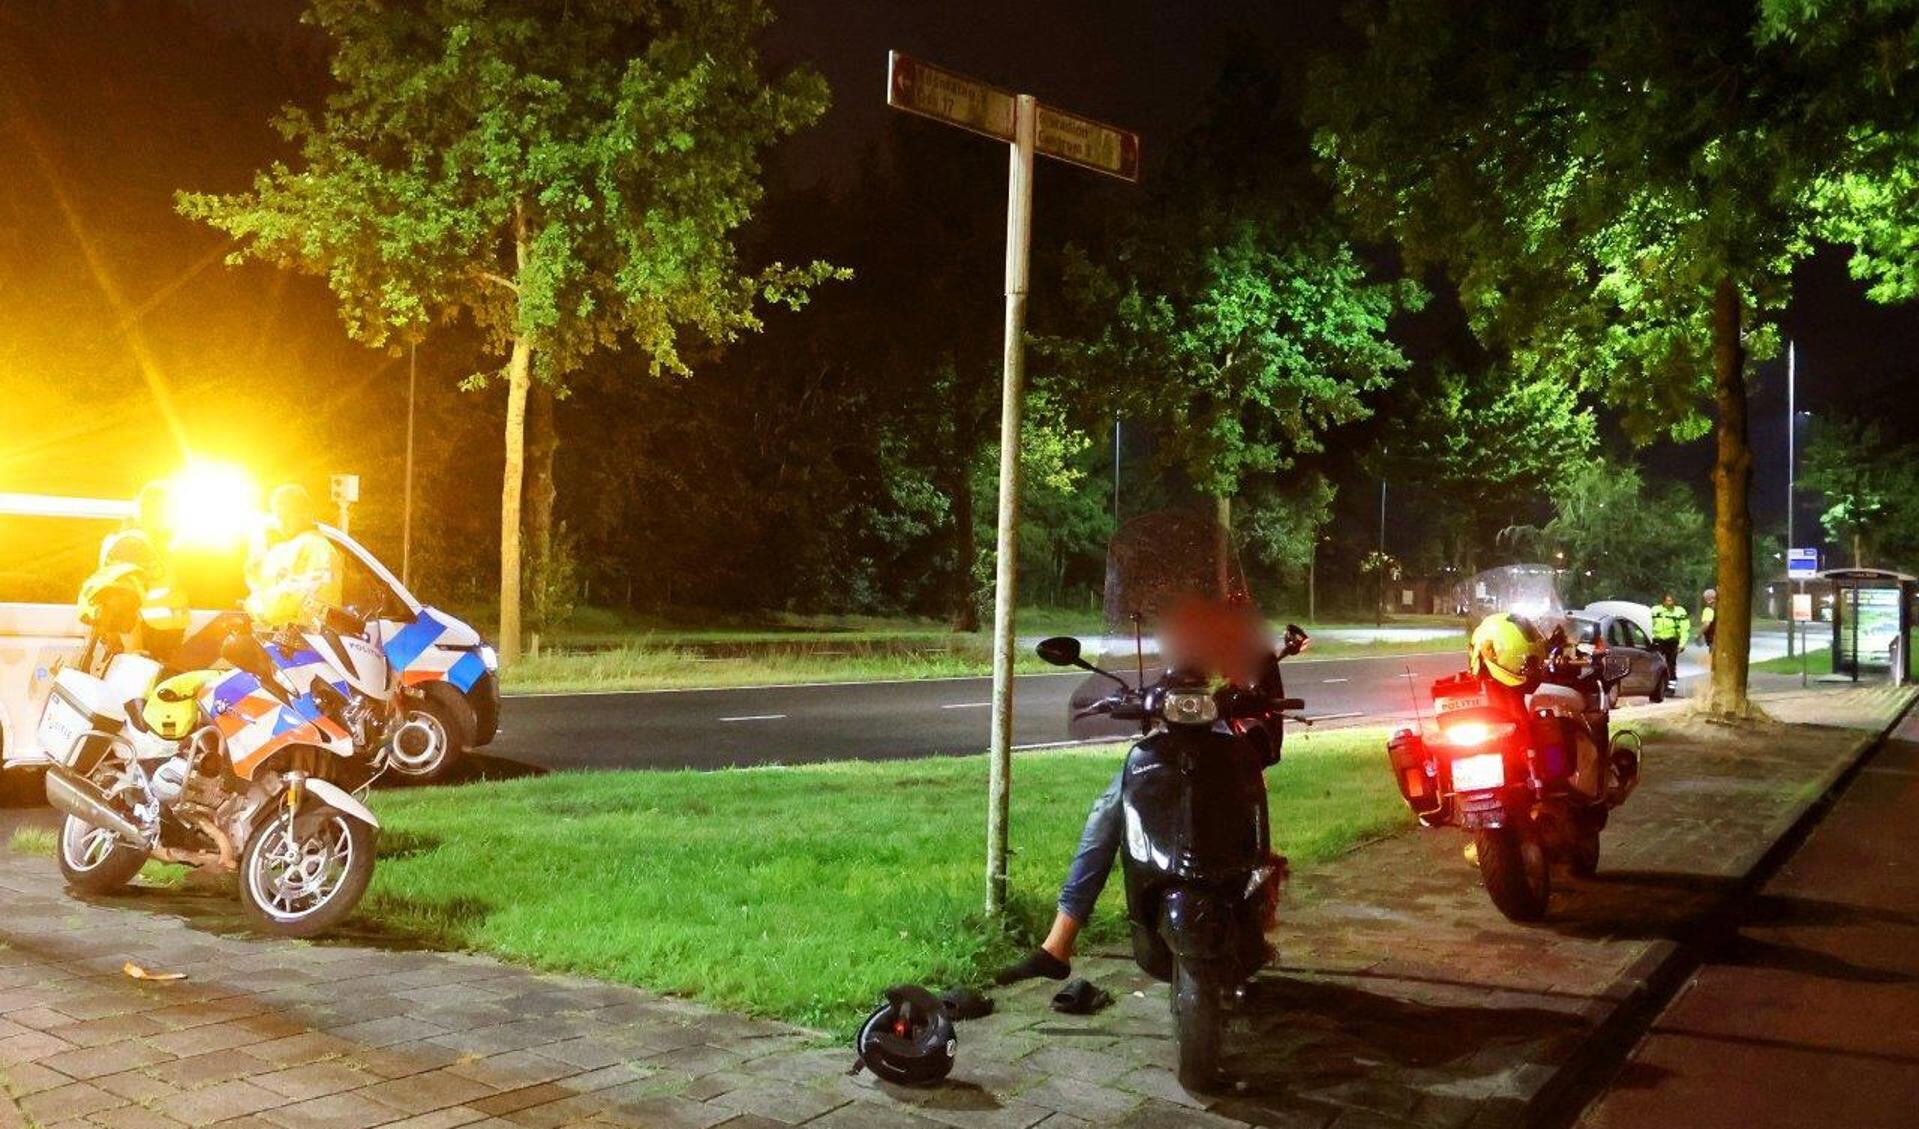 Een 17-jarige bestuurder van een scooter negeerde zaterdagavond aan de Bruistensingel in Den Bosch een stopteken van de politie. Iets verderop stak hij met zijn scooter de straat over waarna hij in aanrijding kwam met een personenauto.